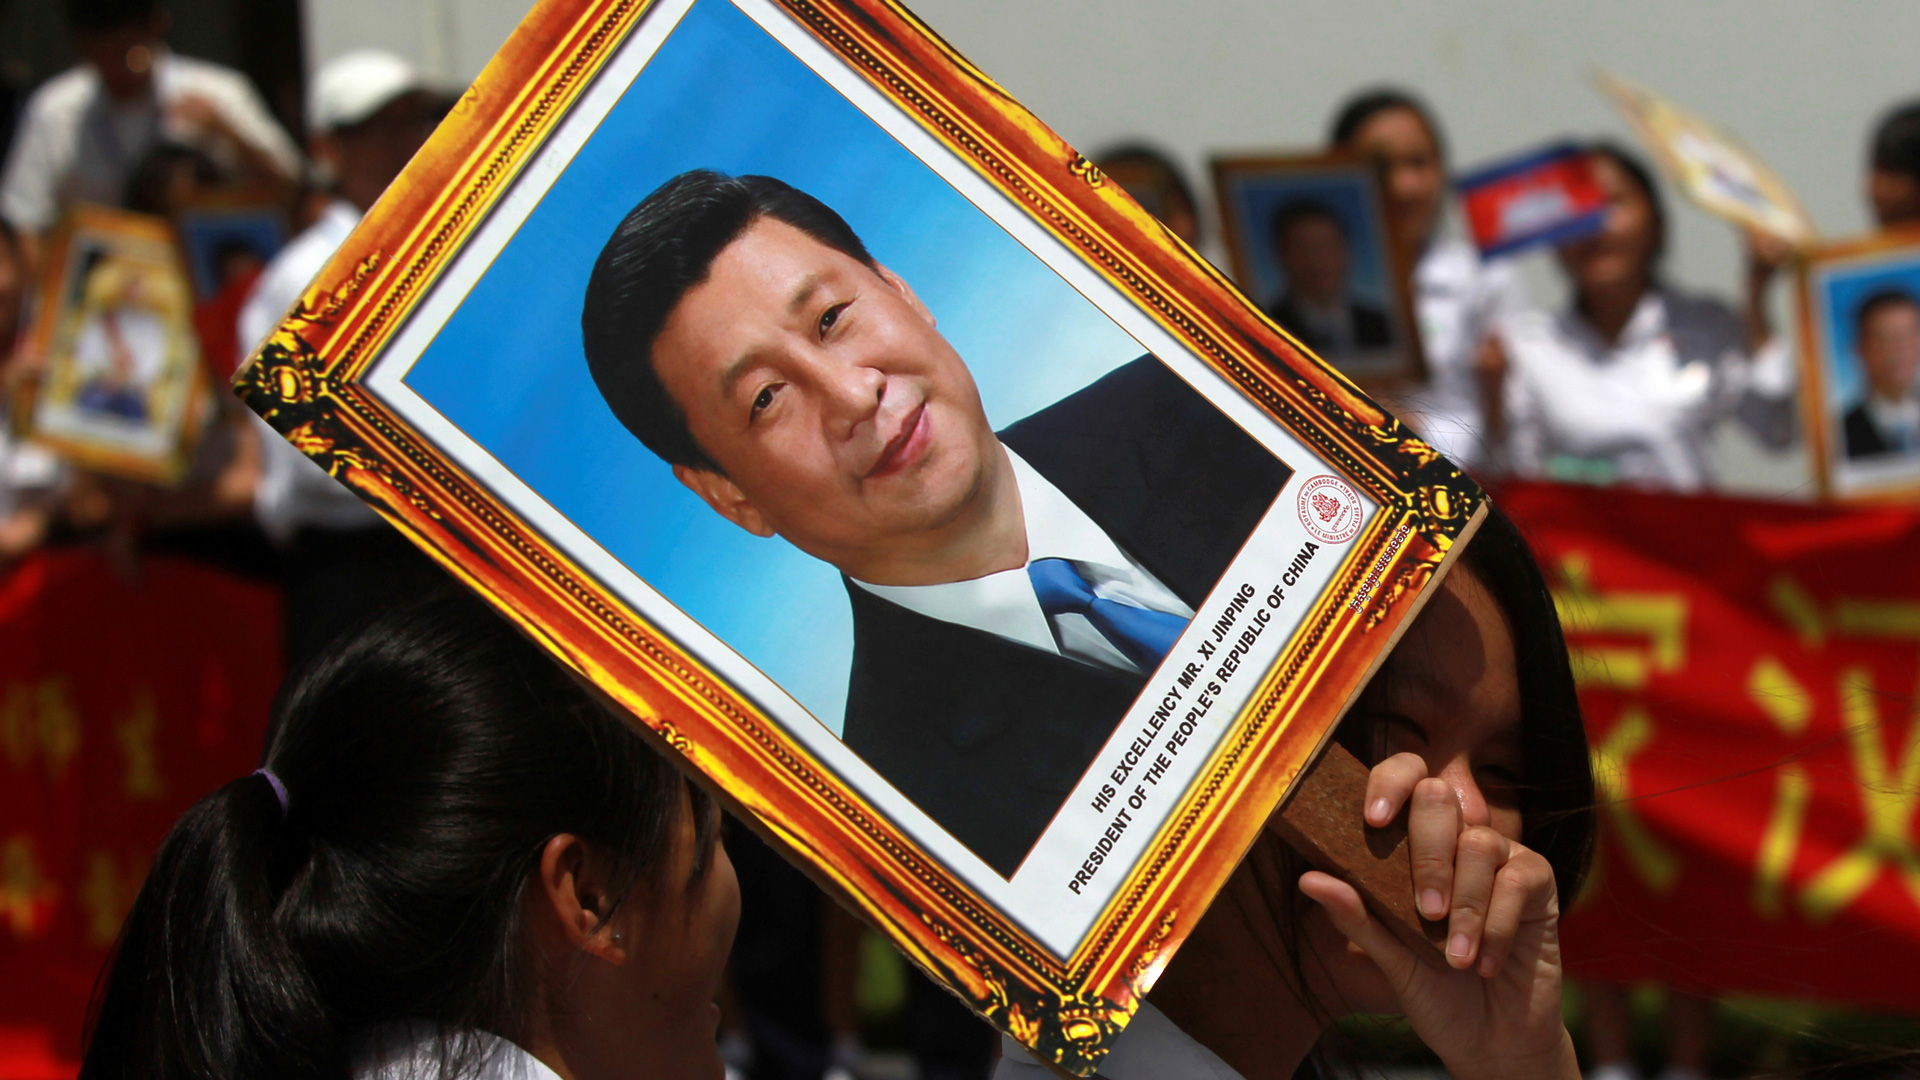 Ordenan a cristianos chinos a sustituir retratos de Cristo por los de Xi Jinping